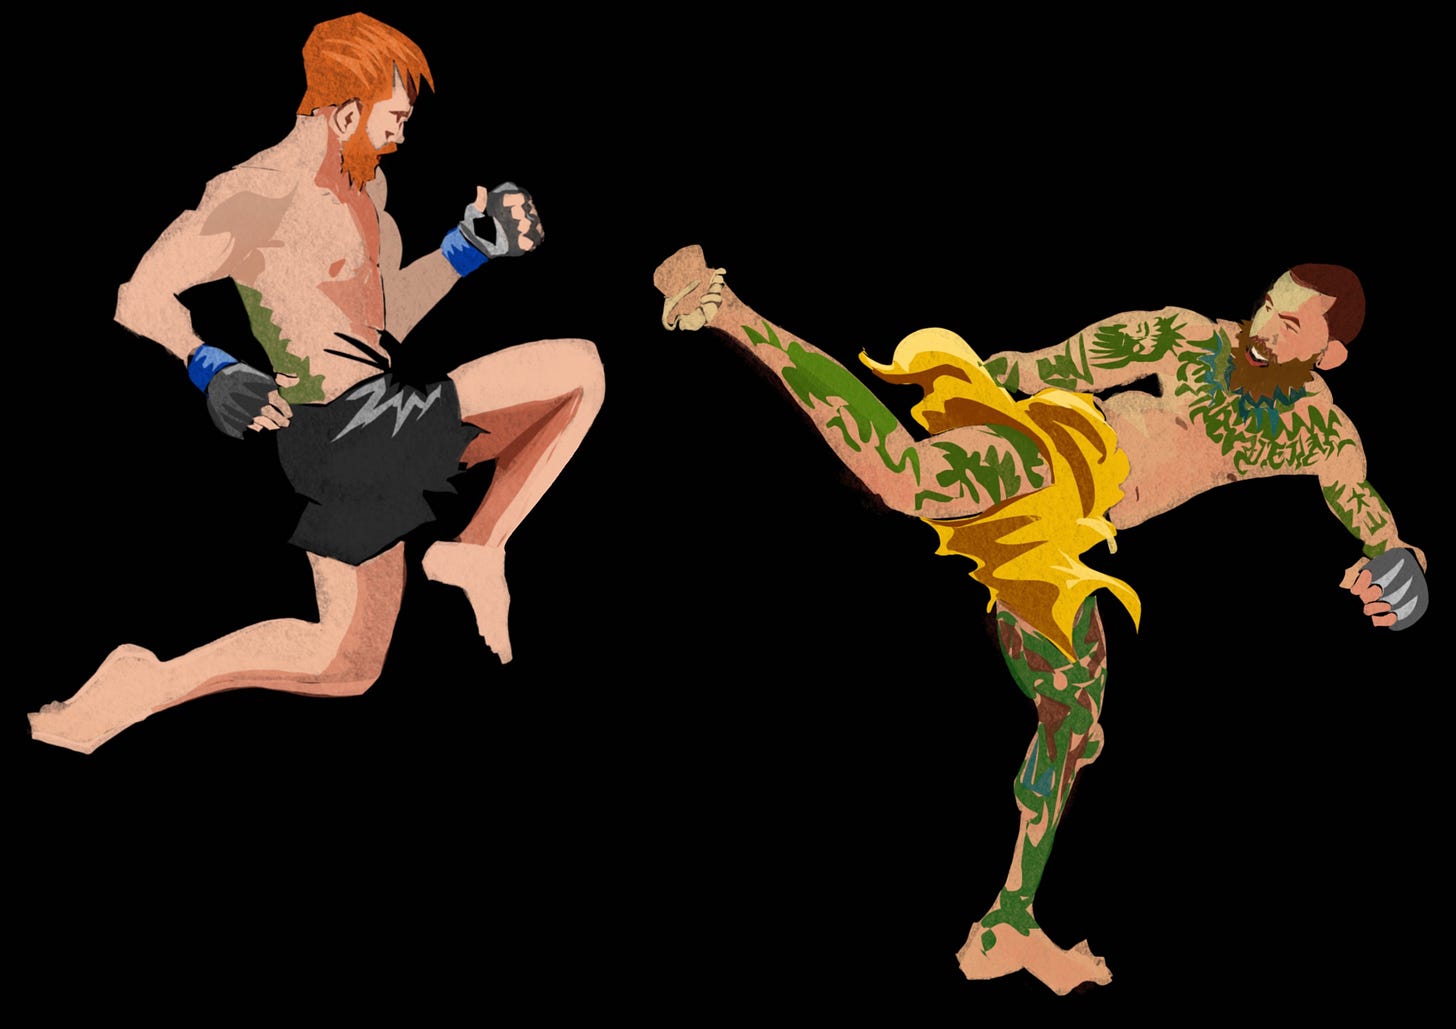 Illustration of Cory Sandhagen vs. Marlon Vera